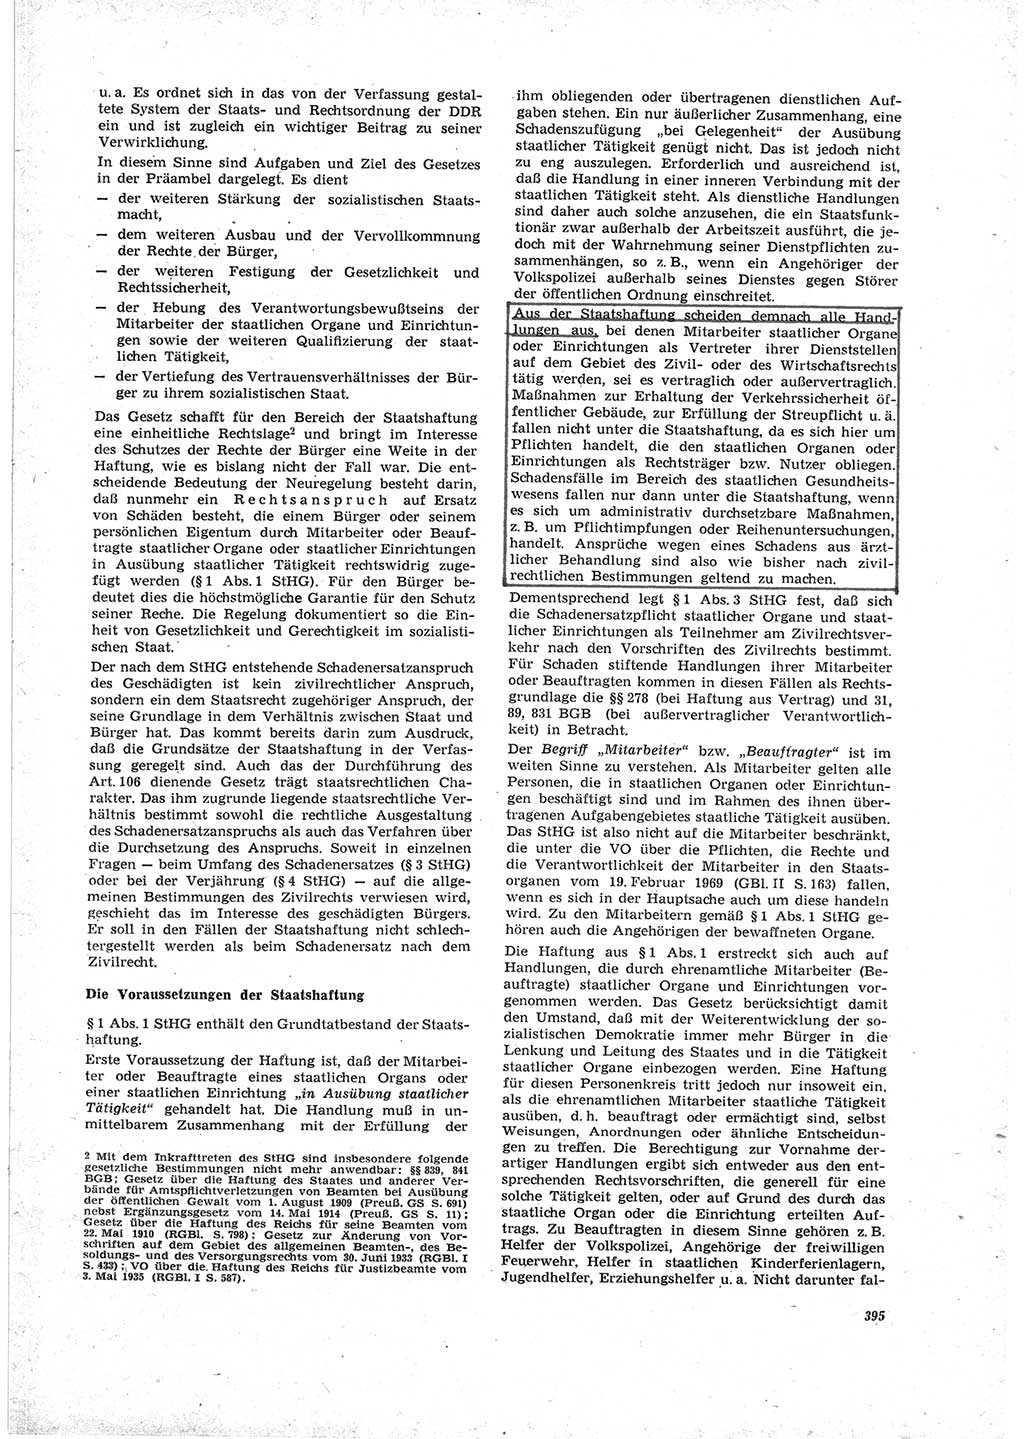 Neue Justiz (NJ), Zeitschrift für Recht und Rechtswissenschaft [Deutsche Demokratische Republik (DDR)], 23. Jahrgang 1969, Seite 395 (NJ DDR 1969, S. 395)